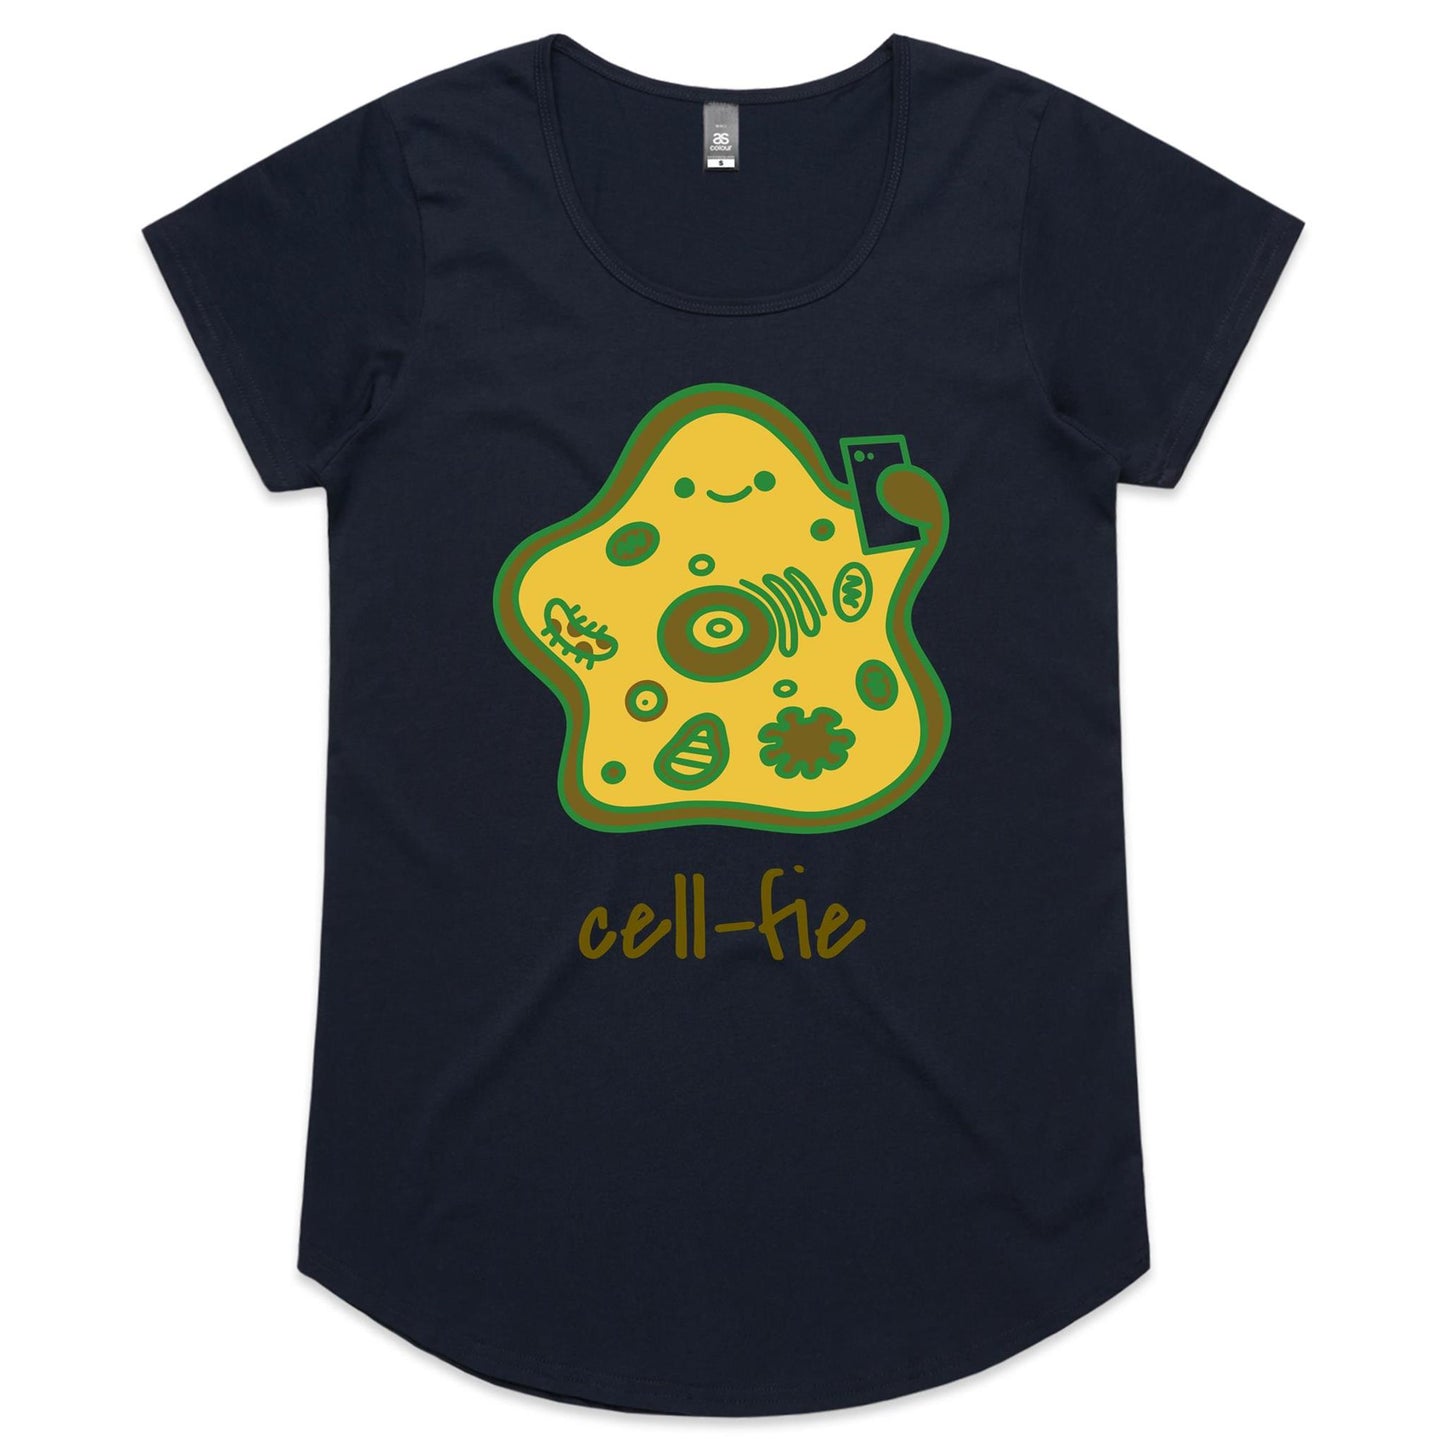 Cell-fie - Womens Scoop Neck T-Shirt Navy Womens Scoop Neck T-shirt Science